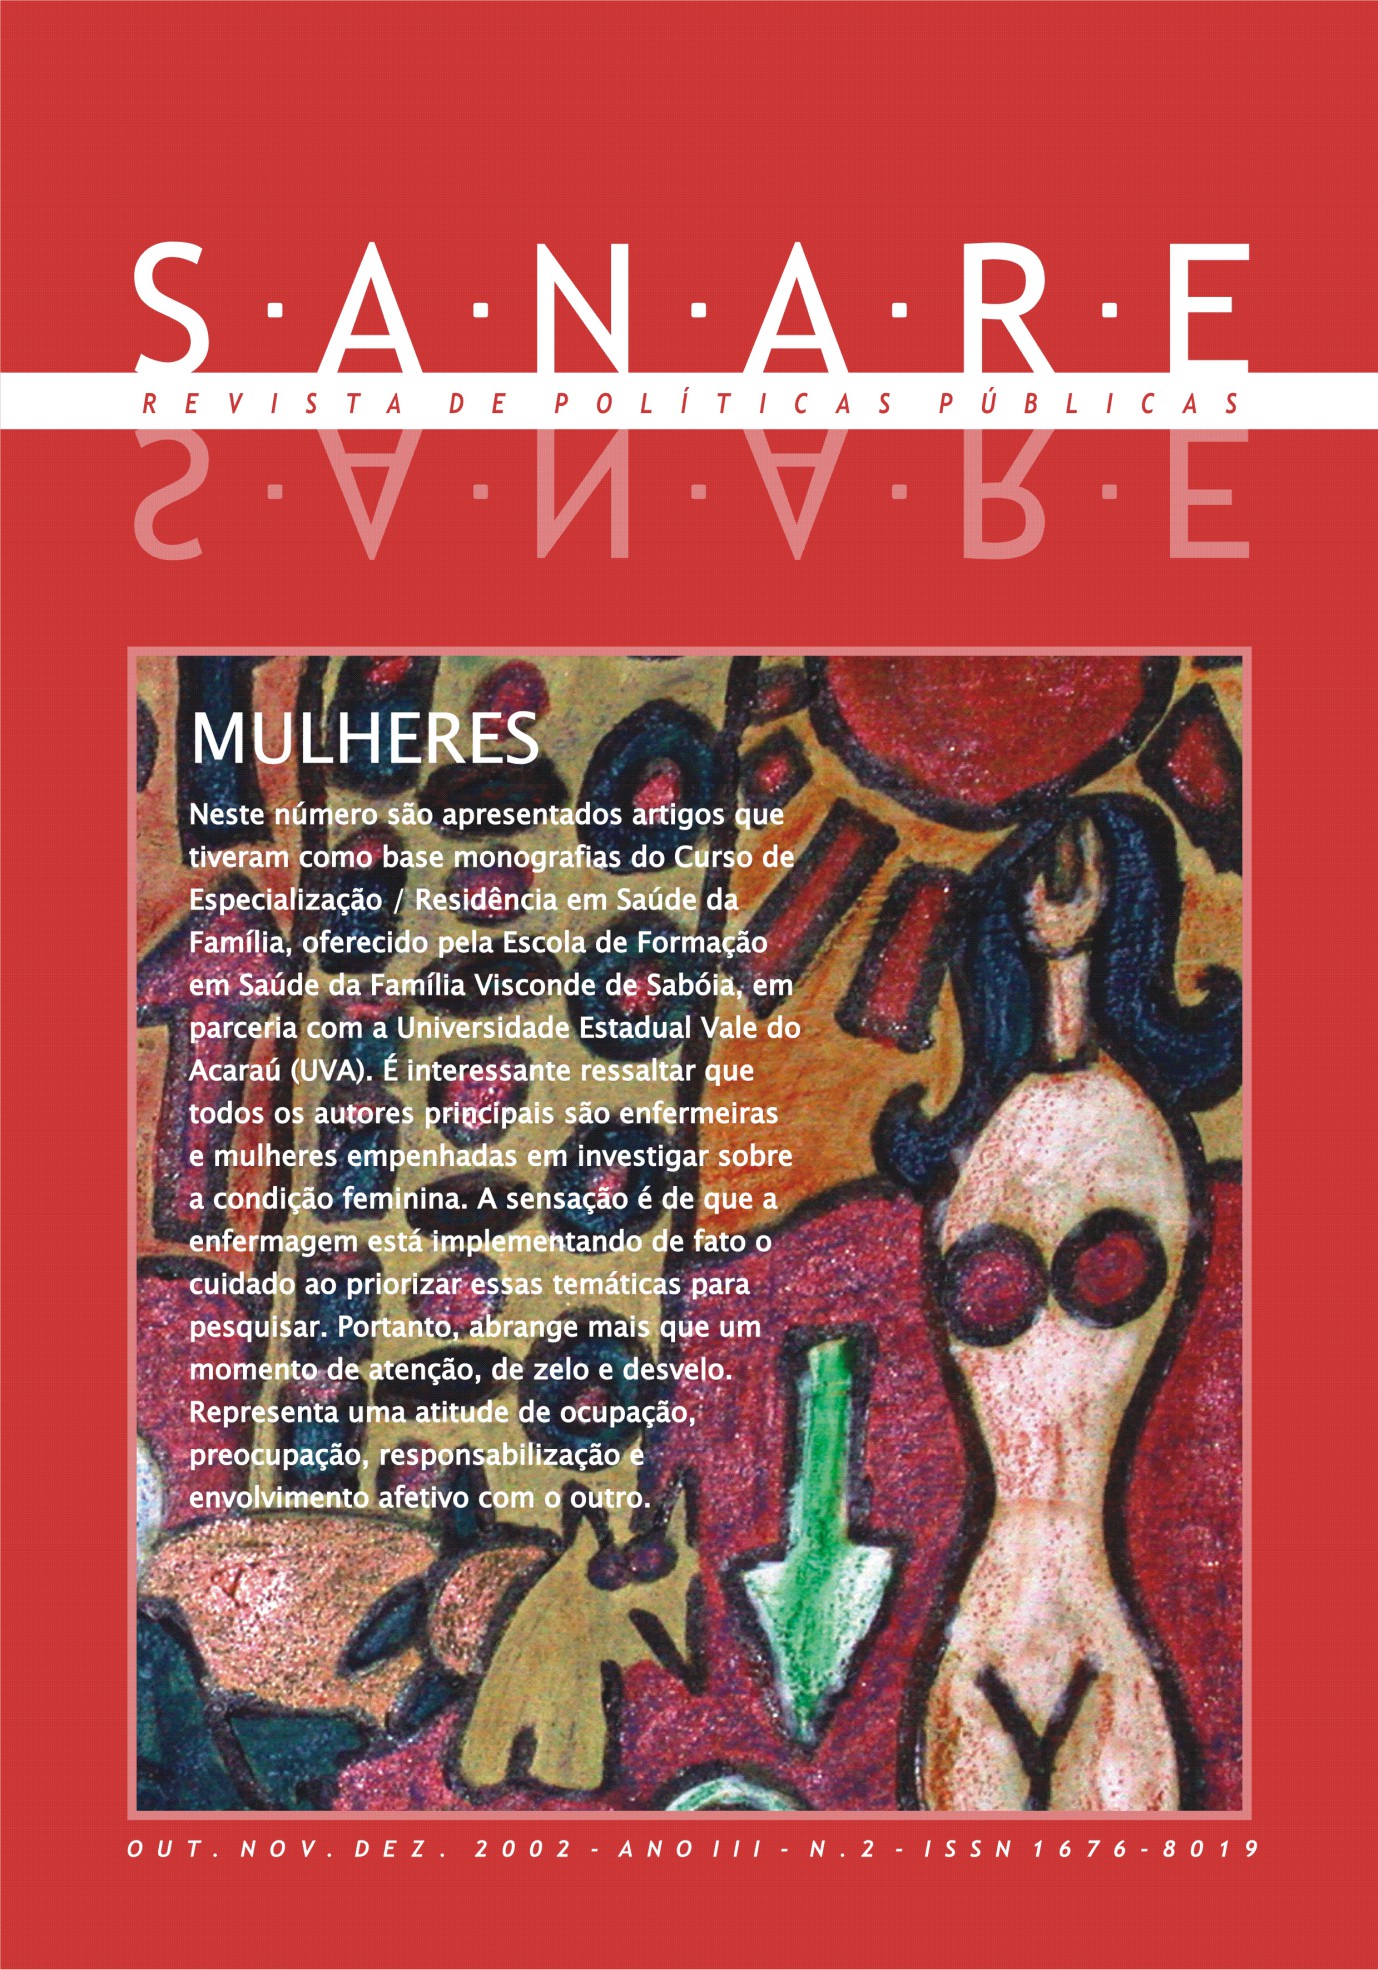 					Visualizar v. 3 n. 2 (2002): SANARE - Mulheres
				